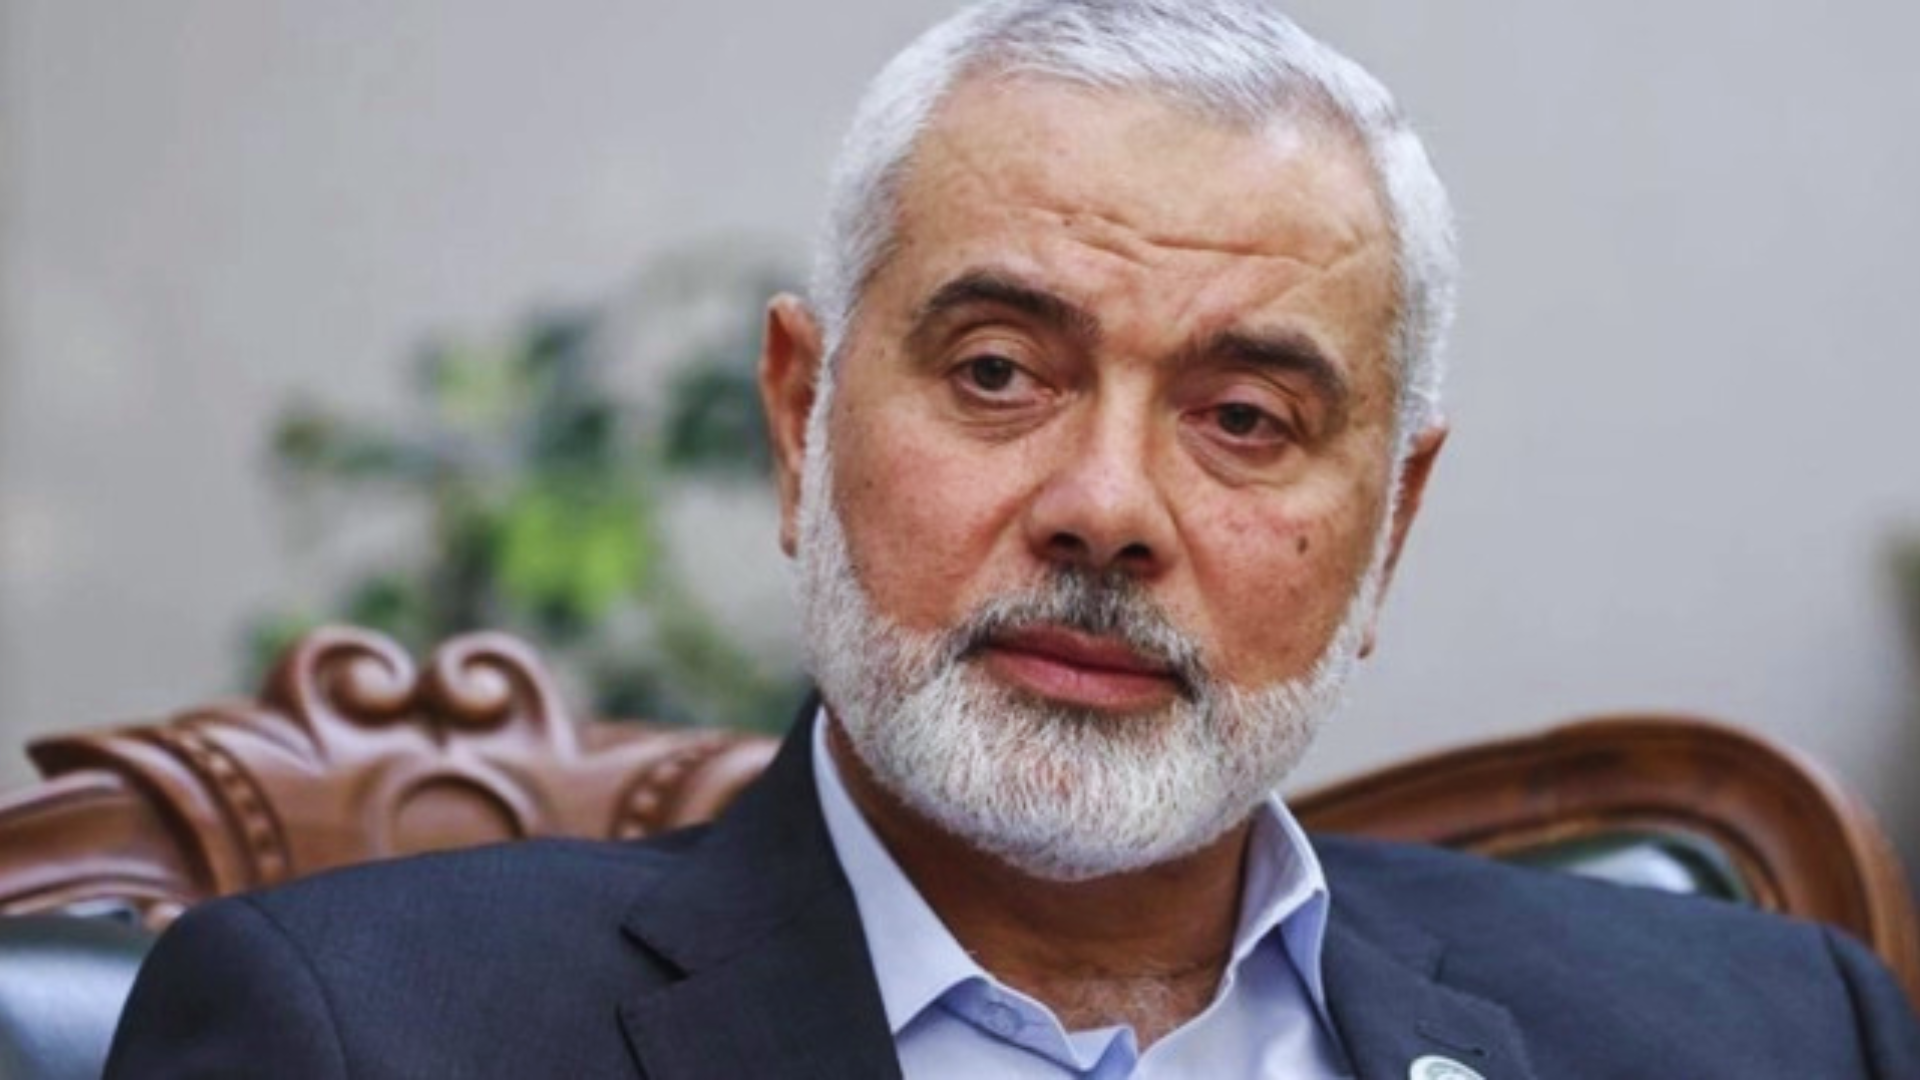 Hamas Chief Ismail Haniyeh’s 3 Children And 2 Grandchildren Killed In Israeli Airstrike